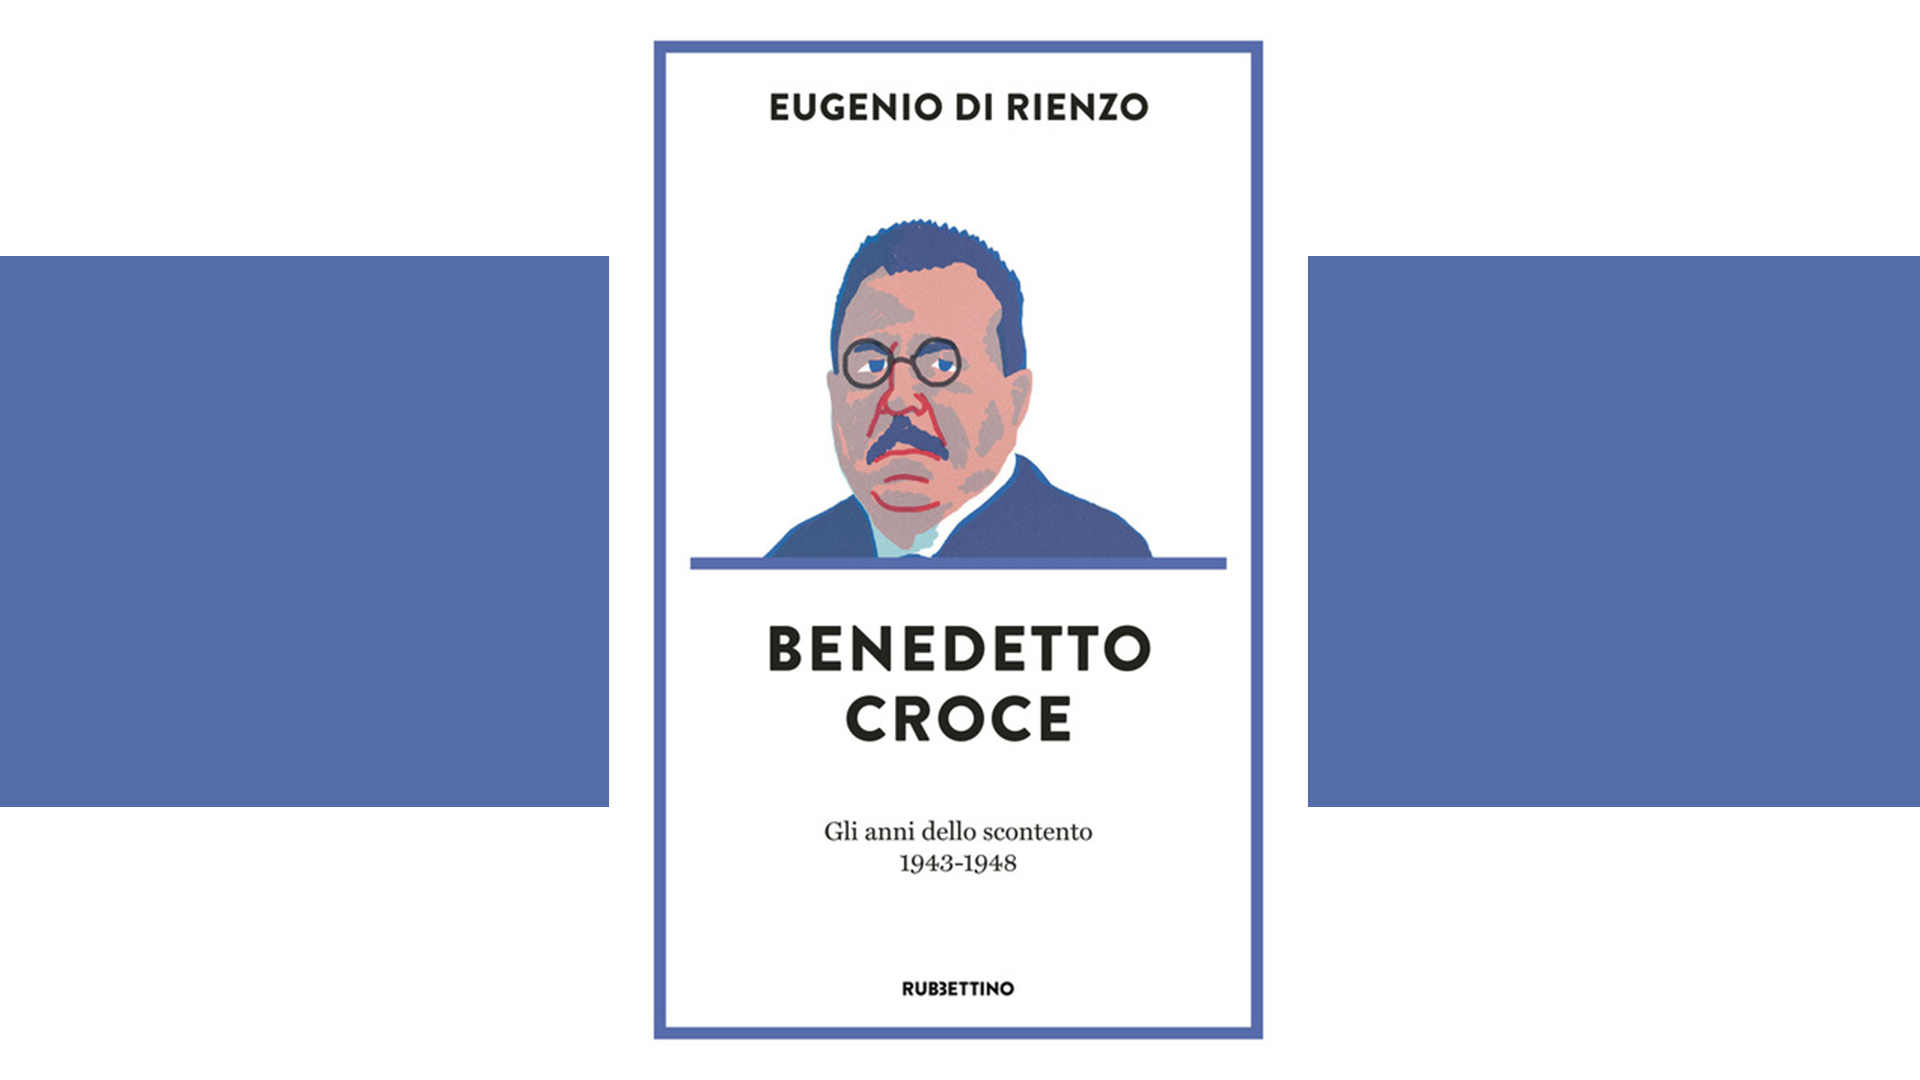 Benedetto Croce diplomatico: un filosofo tra le macerie della King’s Italy